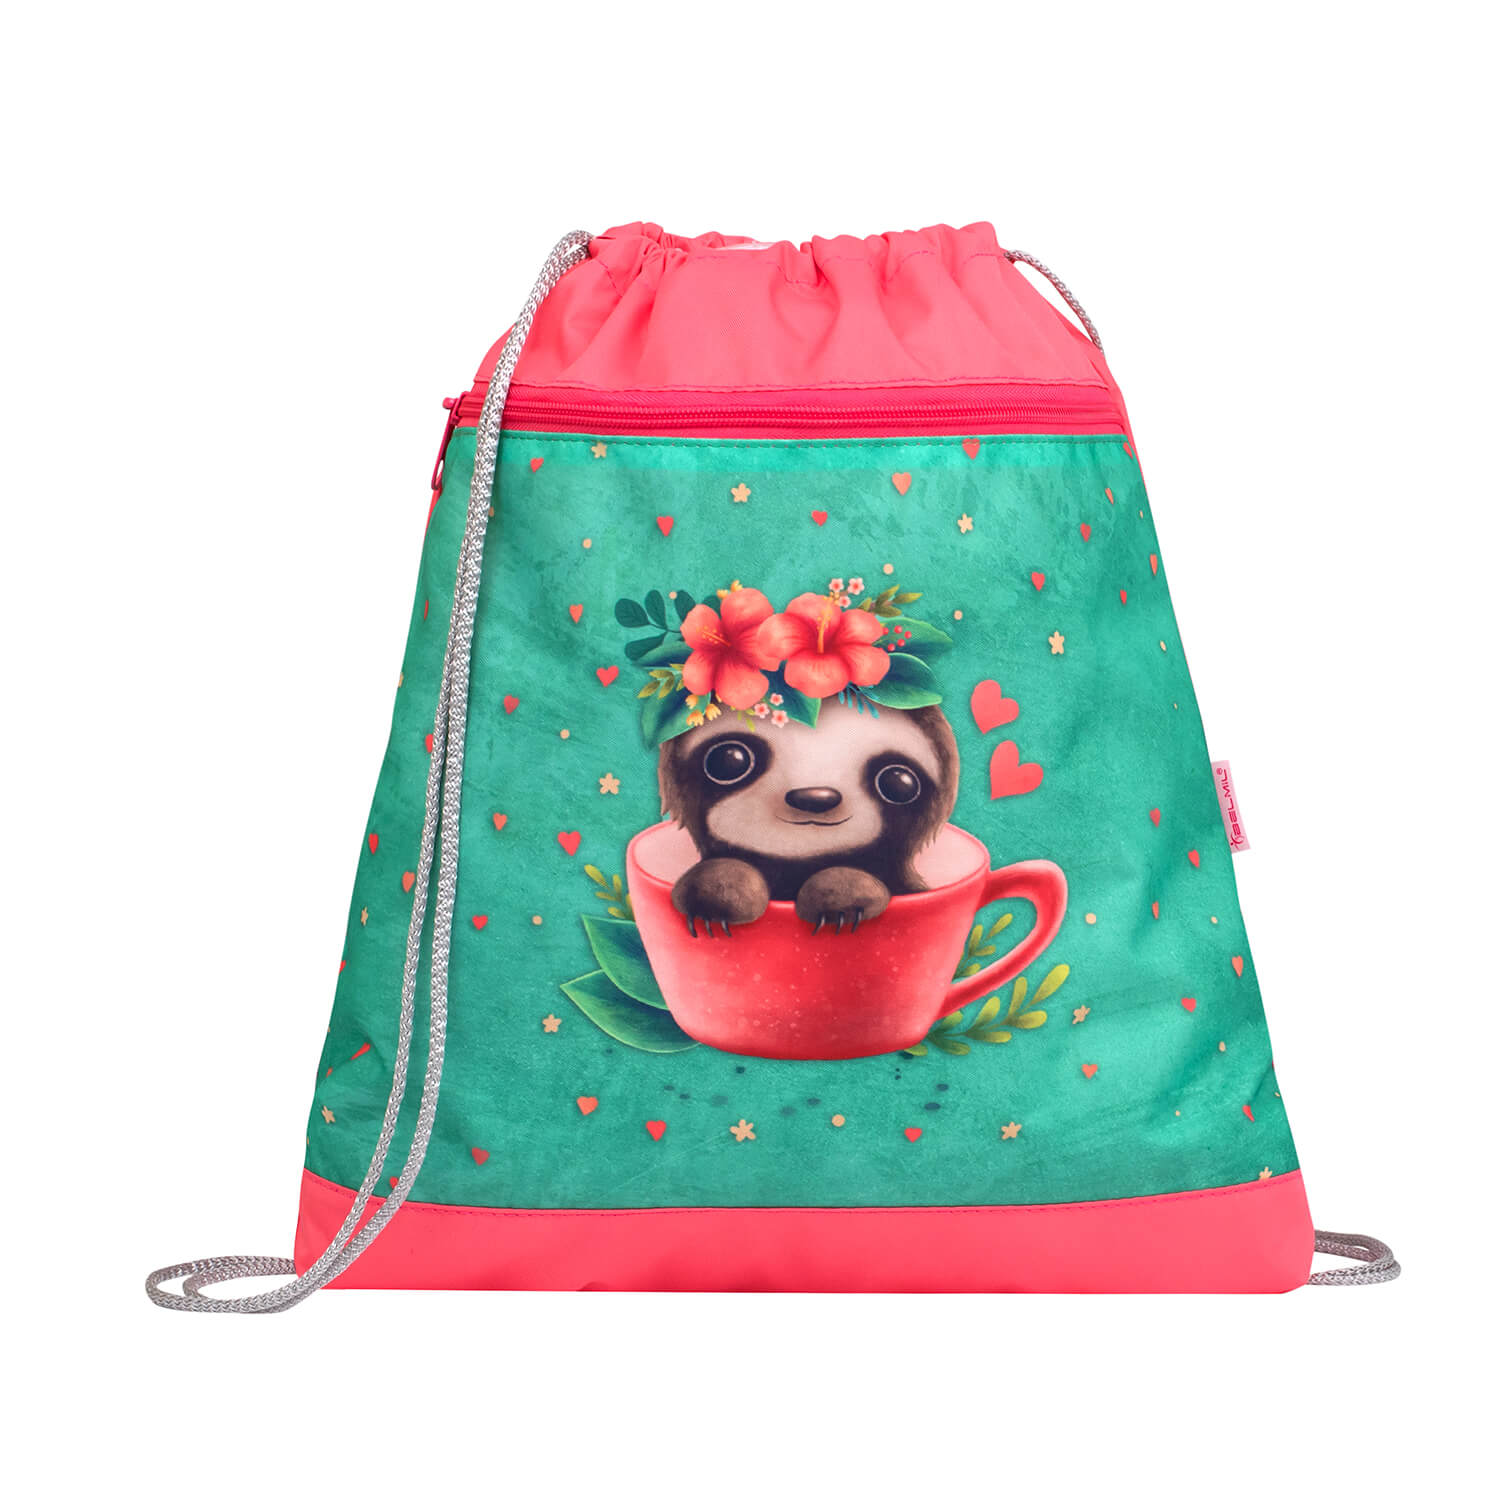 Compact Cute Sloth schoolbag set 4 pcs